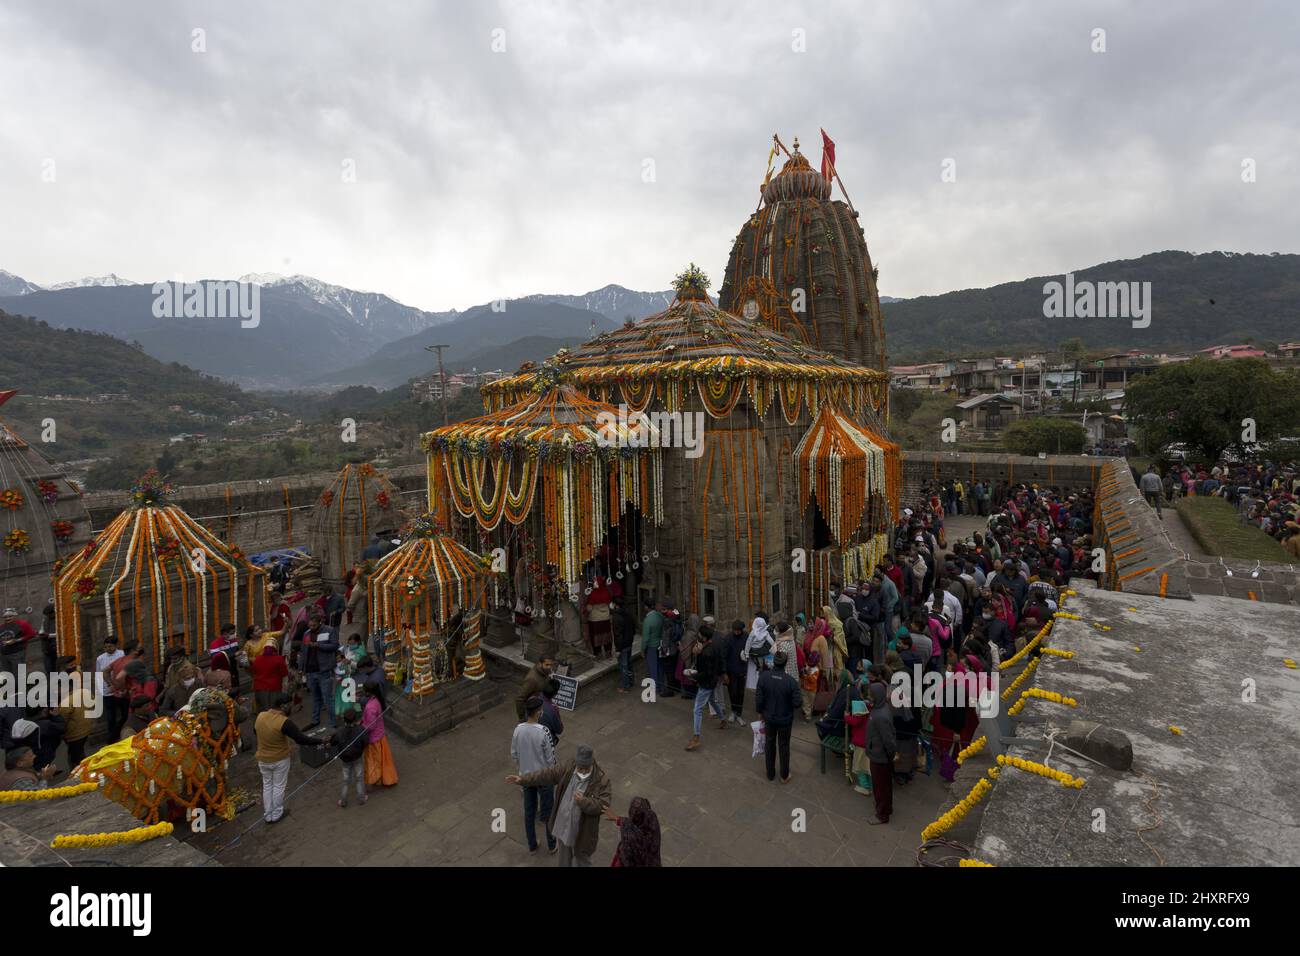 Devoti in fila al tempio di Lord Shiva, Baijnath, in occasione di Maha Shivratri Foto Stock